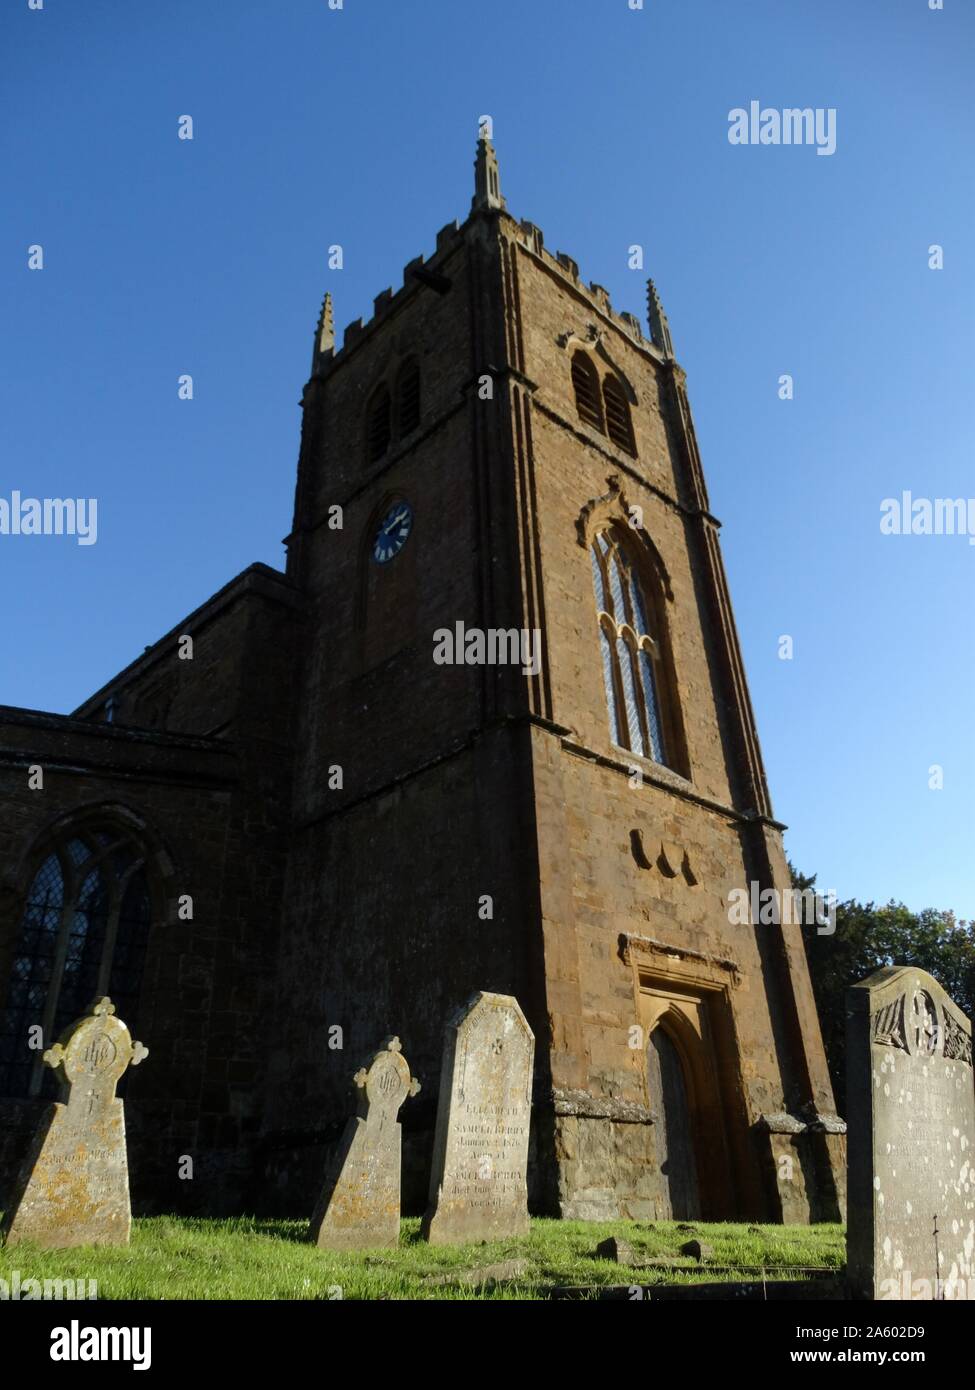 Tutti i santi della chiesa di Inghilterra, chiesa parrocchiale, Wroxton Oxfordshire, Inghilterra. La chiesa risale al XIV secolo con aggiunte e lavori di ristrutturazione tra cui la macchia finestre di vetro e la torre aggiunto nel XVIII e XIX secolo. Foto Stock